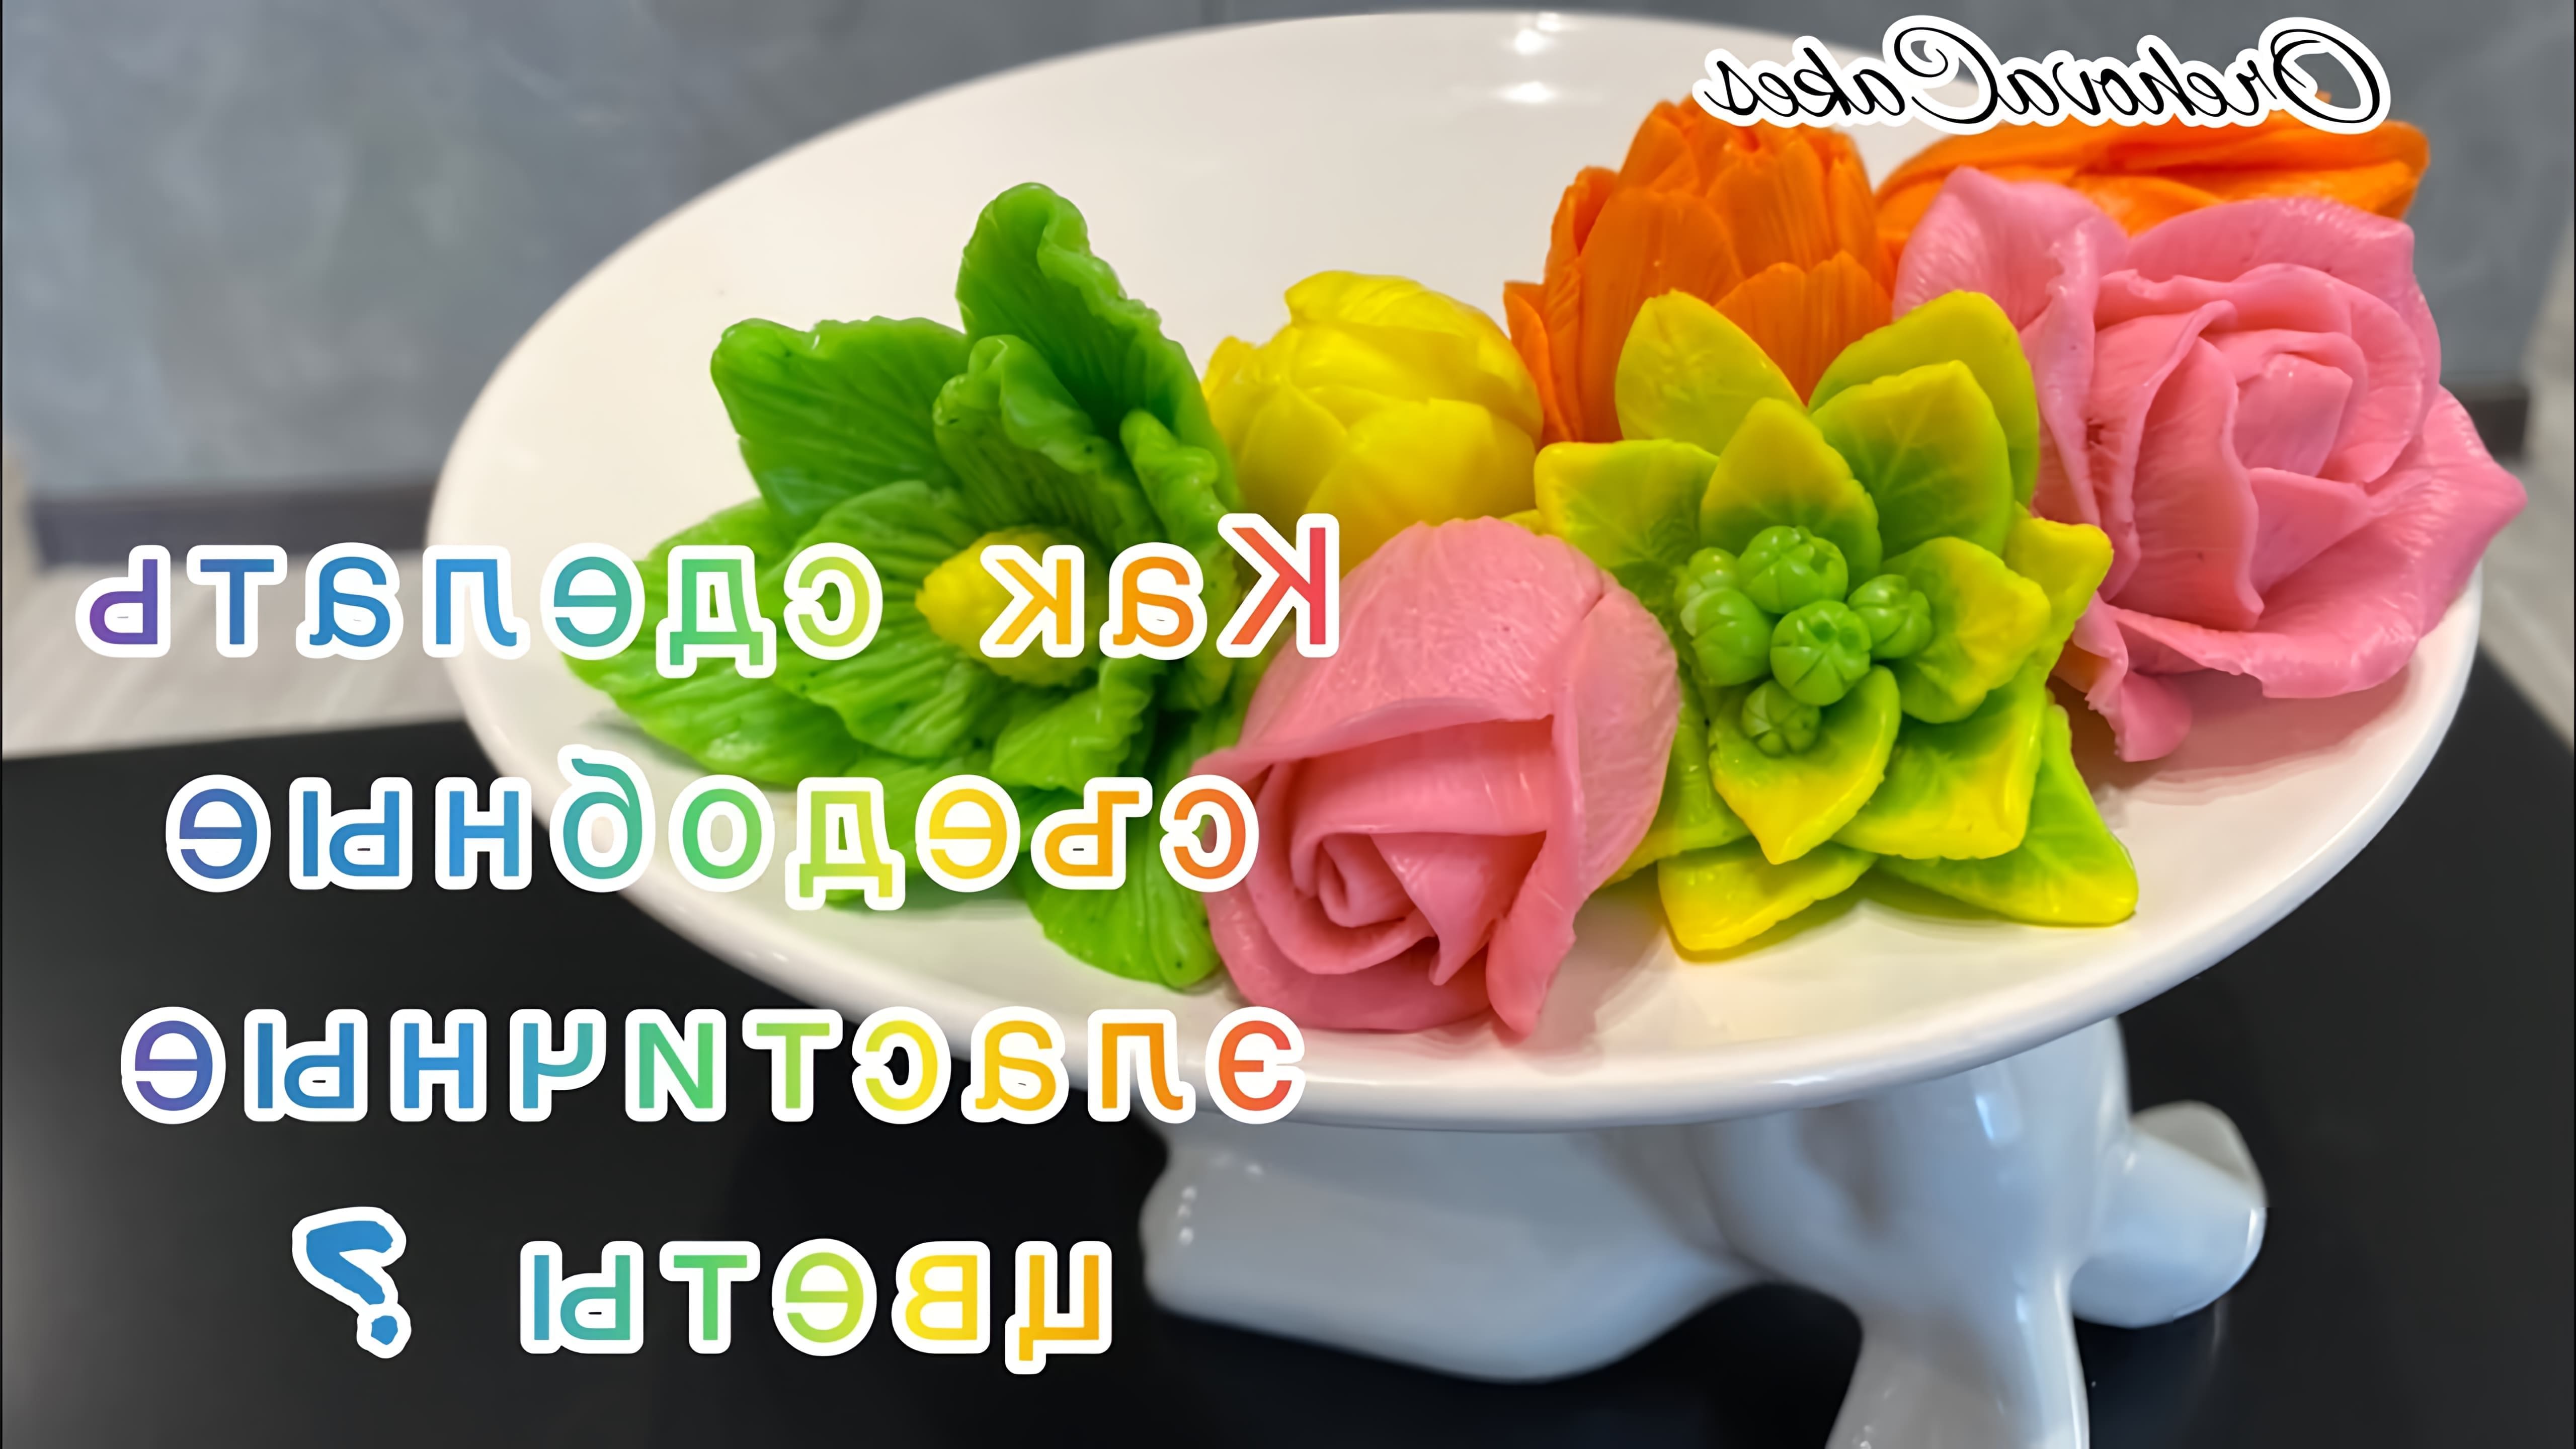 В этом видео демонстрируется, как сделать съедобные, эластичные цветы из мороженого и шоколада